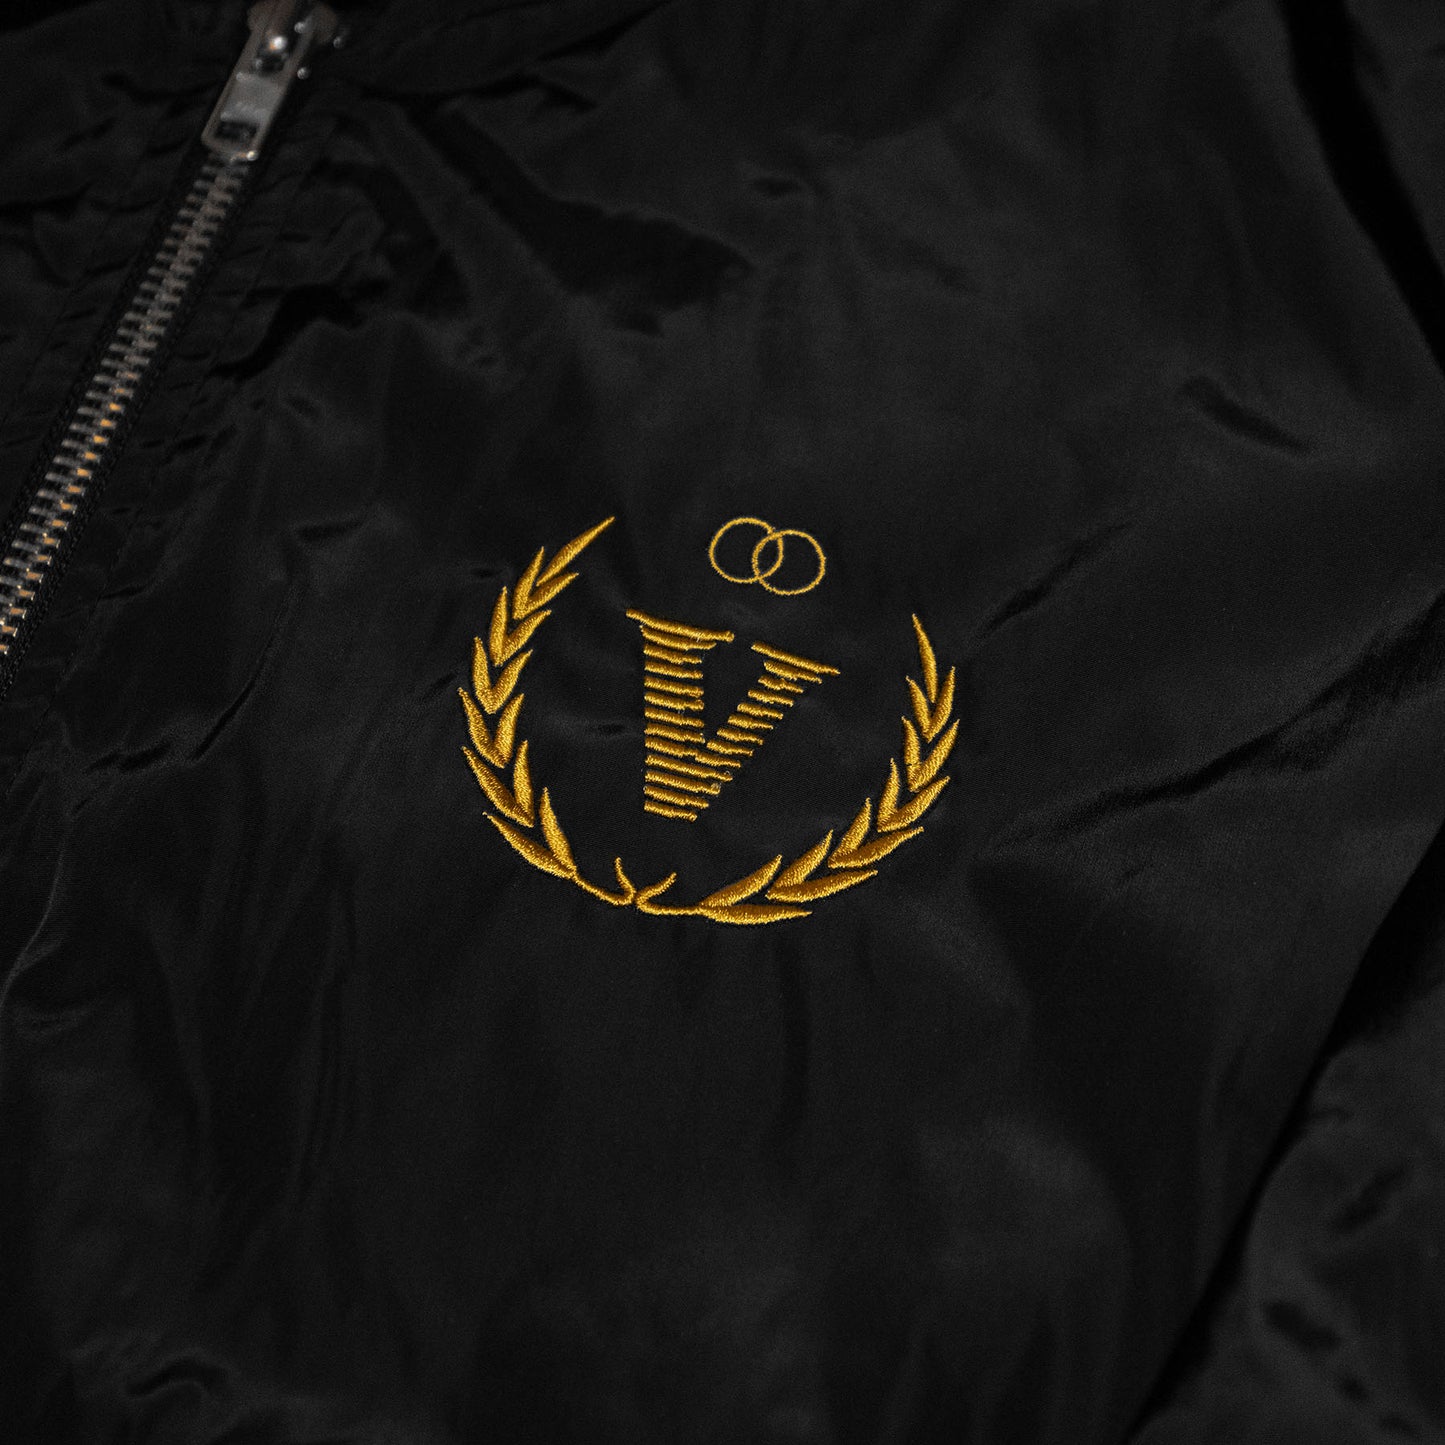 V-Motion Bomber Jacket / Black & Old Gold - IKendoit.Shop